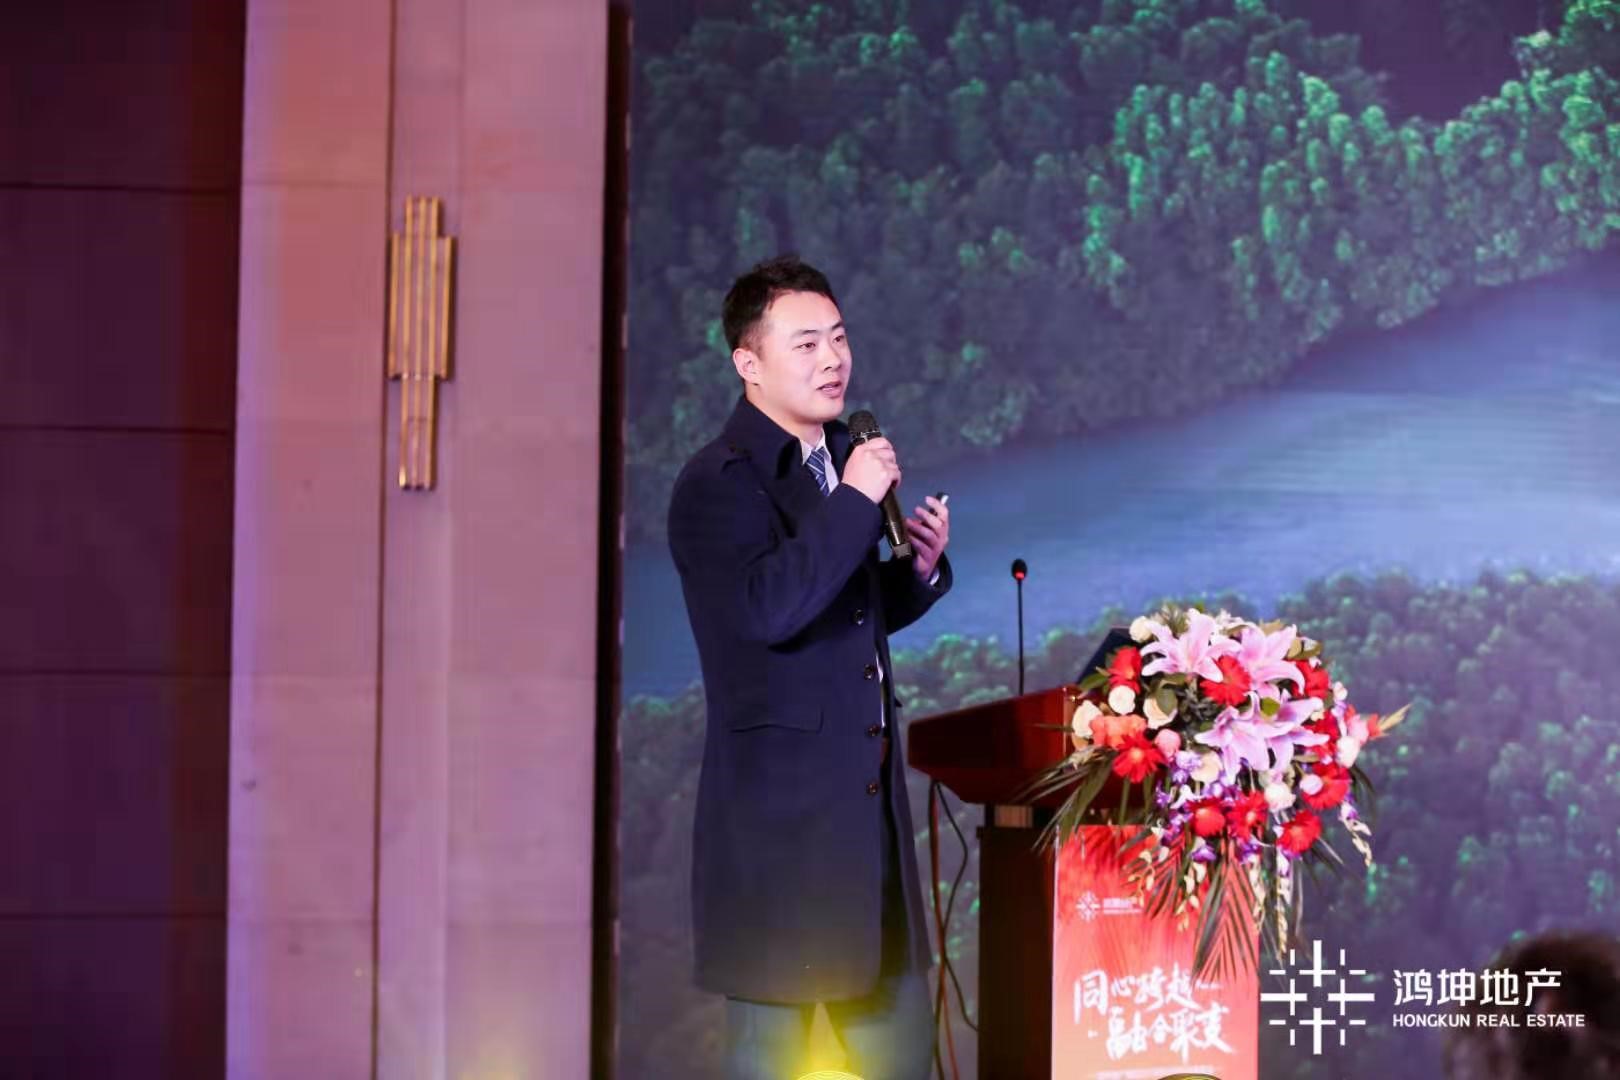 鸿坤地产集团葡萄酒小镇高级营销经理李茂东进行项目分享